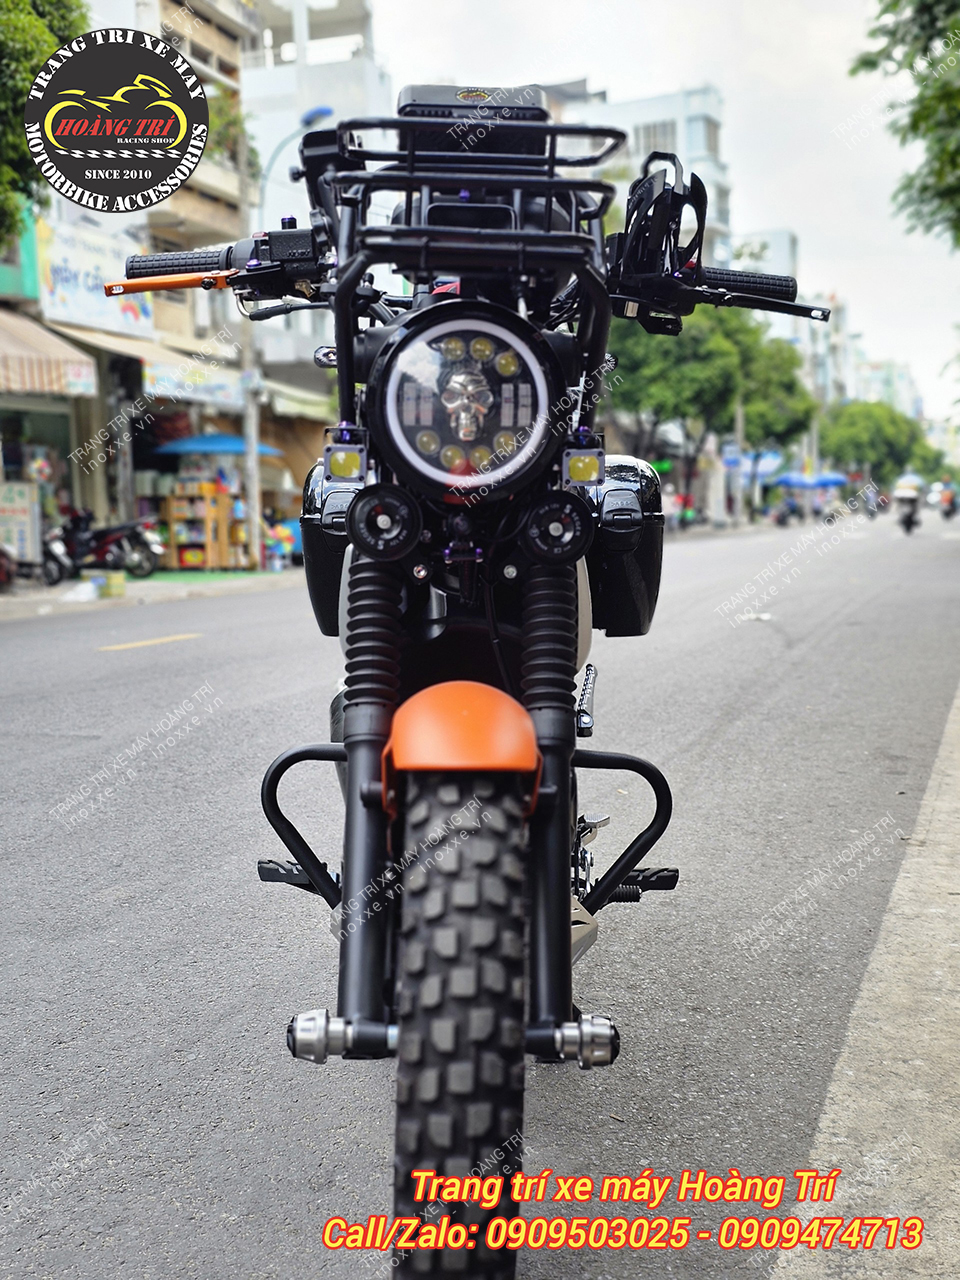 Khung bảo vệ và Ốp gầm xe Yamaha PG-1 chính hãng Motion J Thái Lan